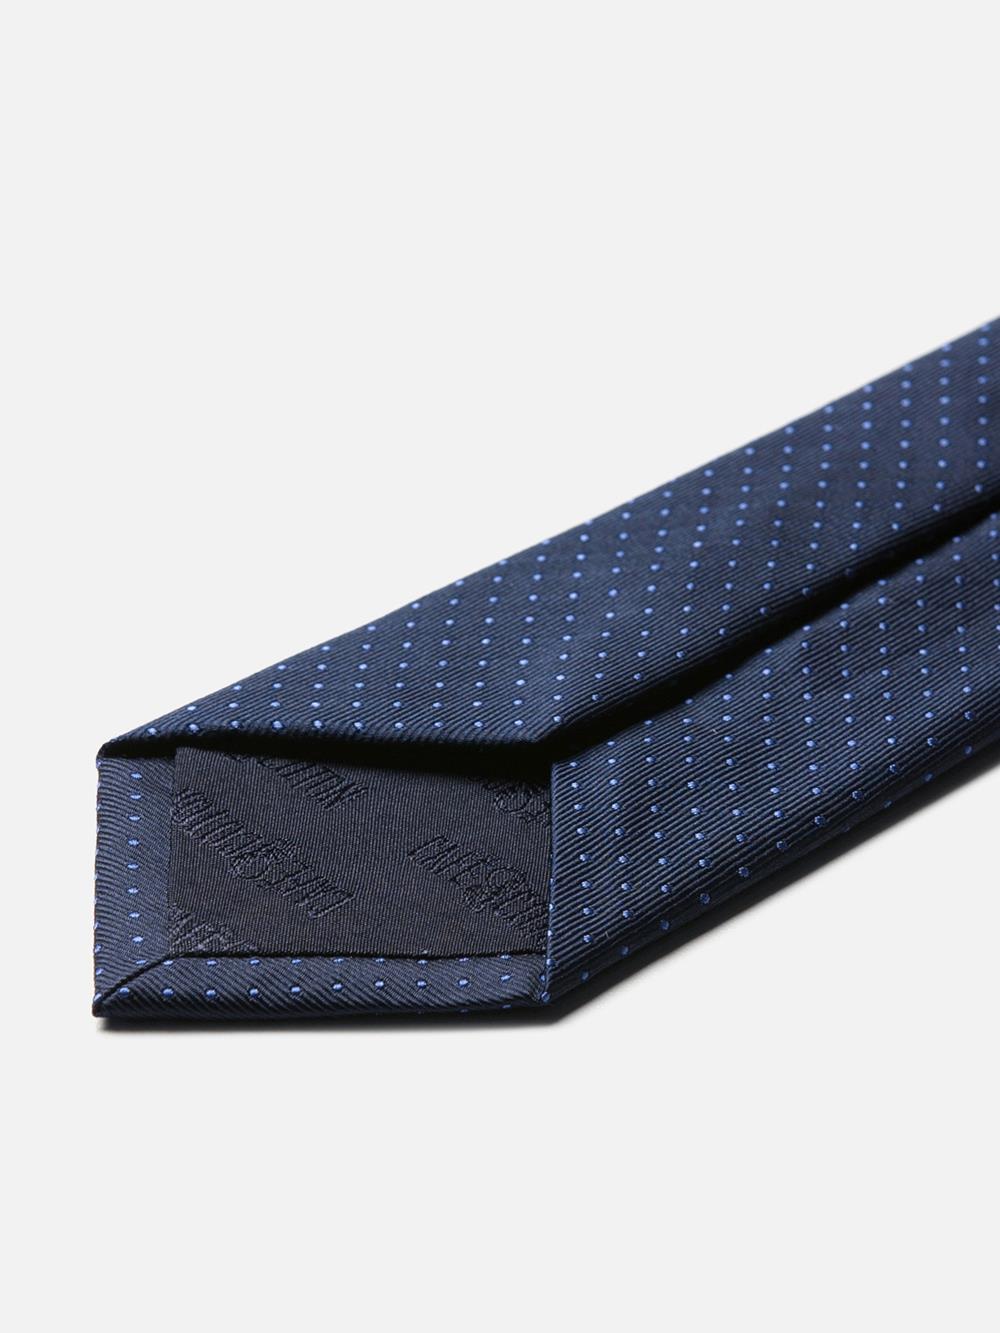 Cravate fine en soie marine à pois bleus